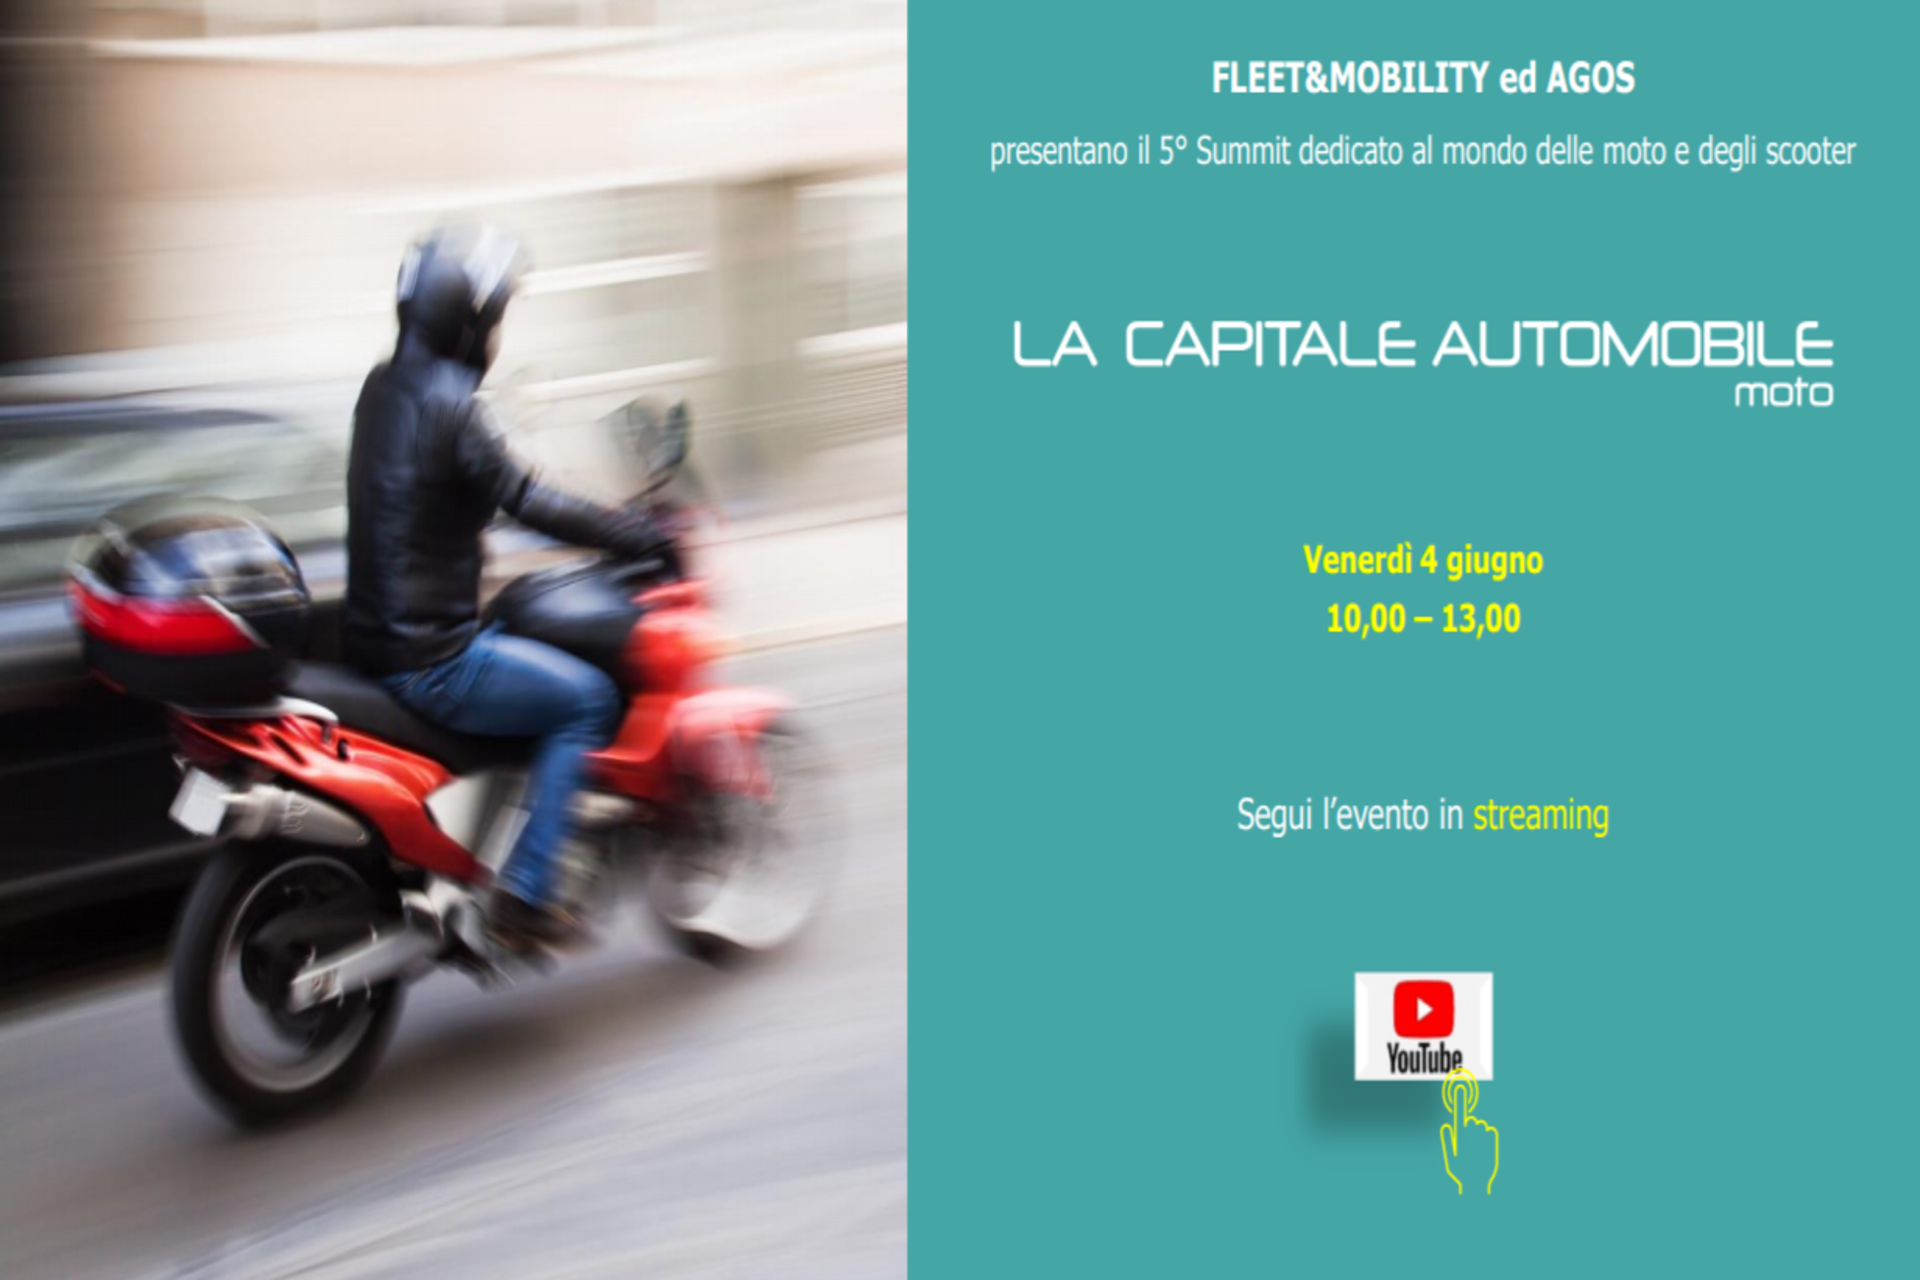 La Capitale Automobile moto: 5° edizione